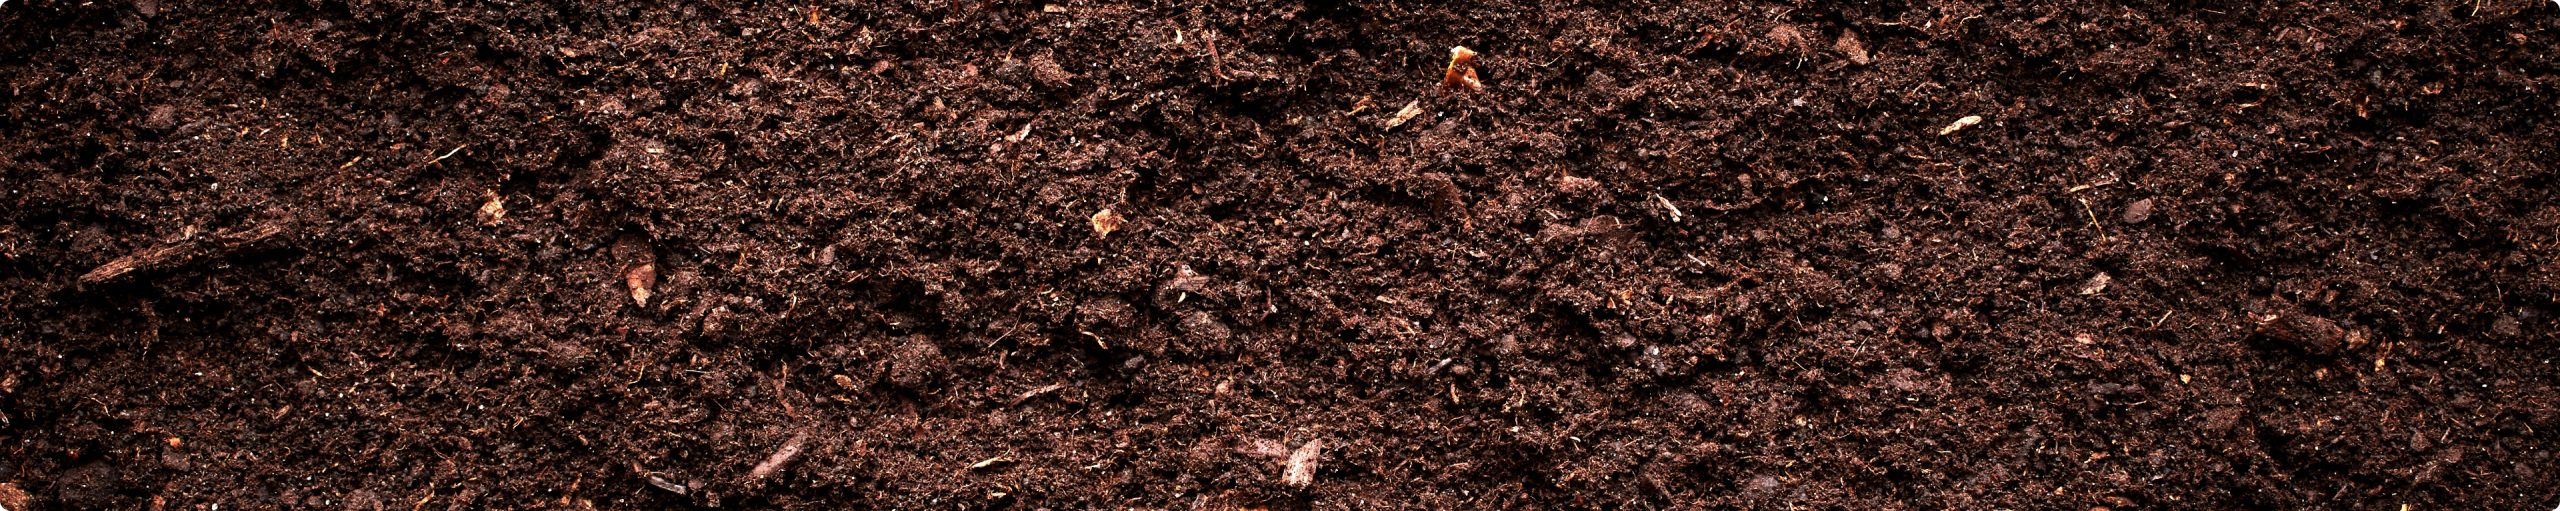 GrowBetter soil